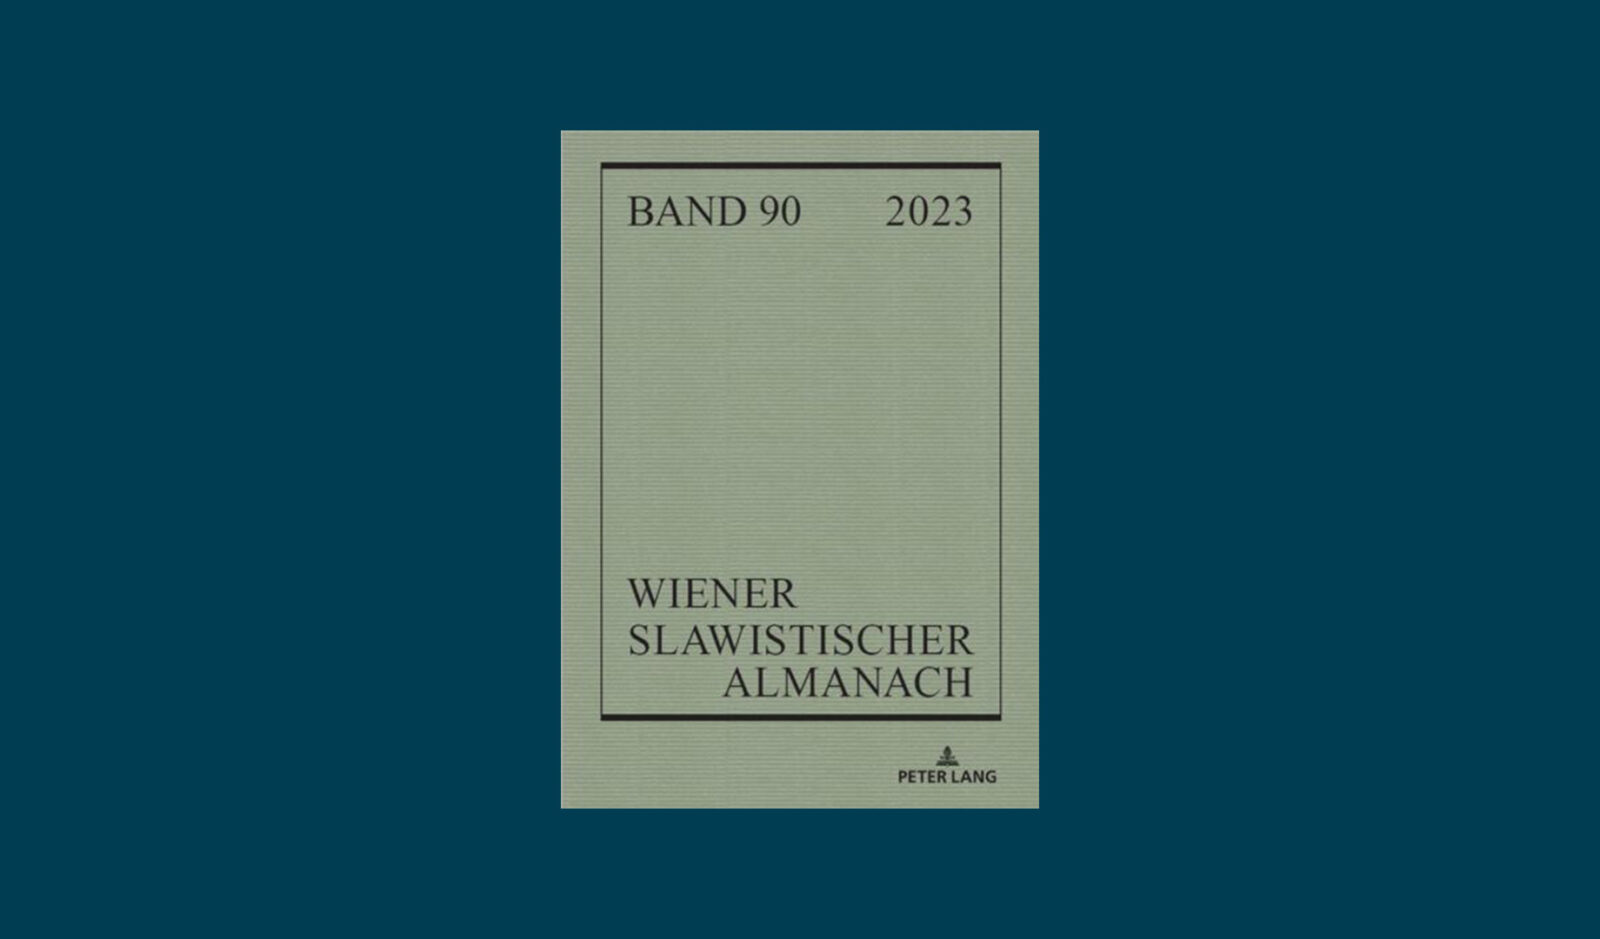 Special issue of Wiener Almanach “Beyond Nostalgia”